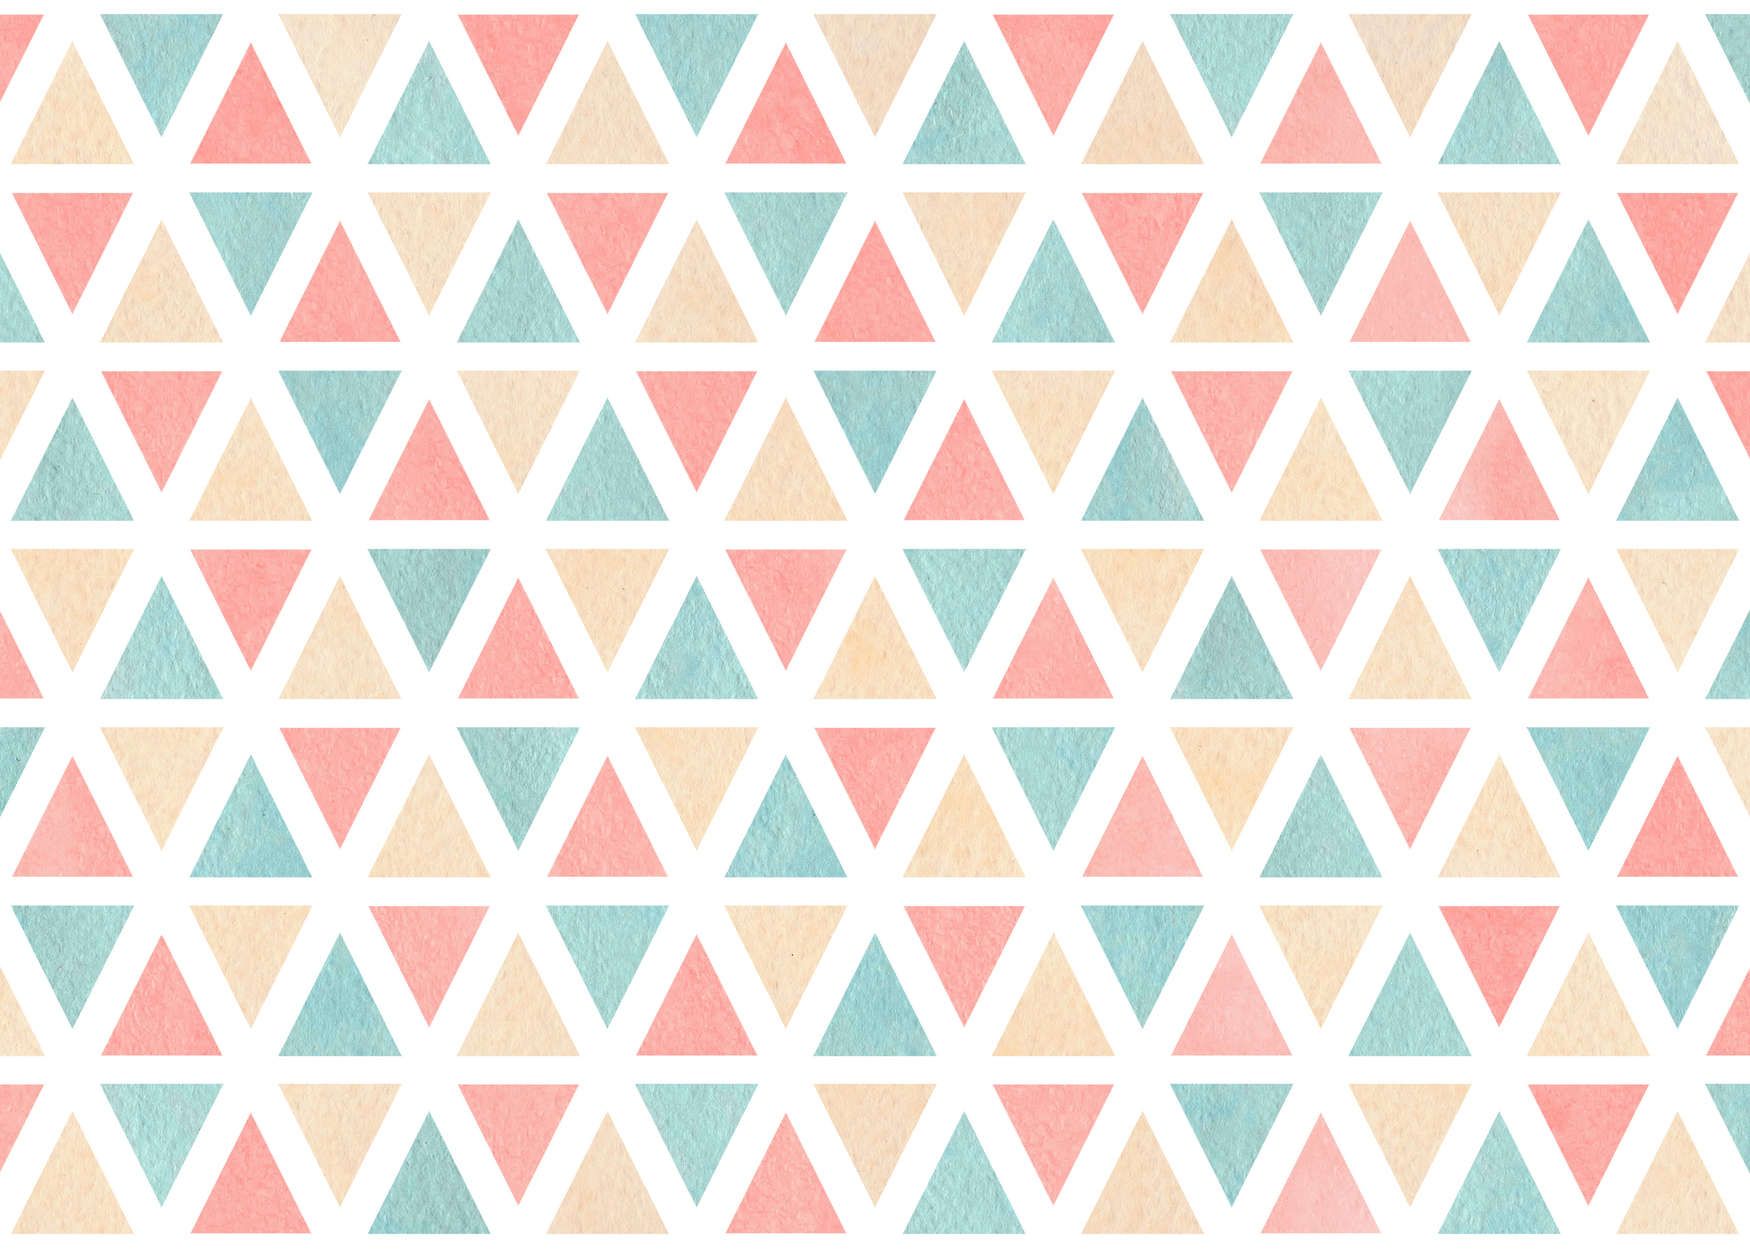             Fototapete grafisches Muster mit bunten Dreiecken – Glattes & leicht glänzendes Vlies
        